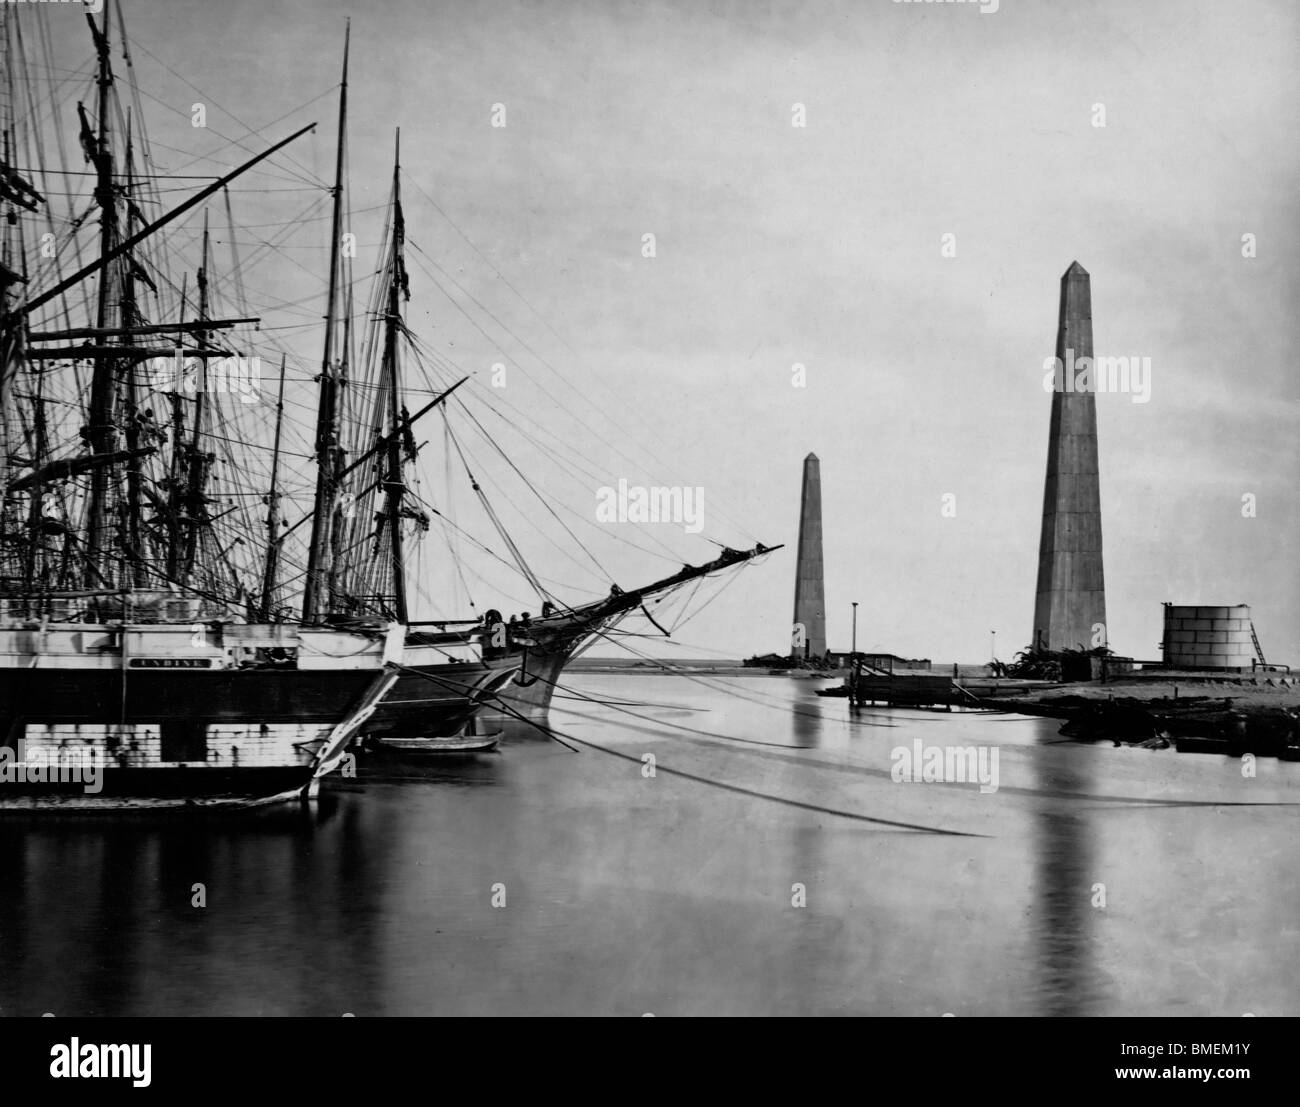 Suez-Kanal-Eingang in Port Said - Obelisken am Ufer und Schiffe in Port Said, der Eingang zu den Suez-Kanal festgemacht. um 1860 Stockfoto